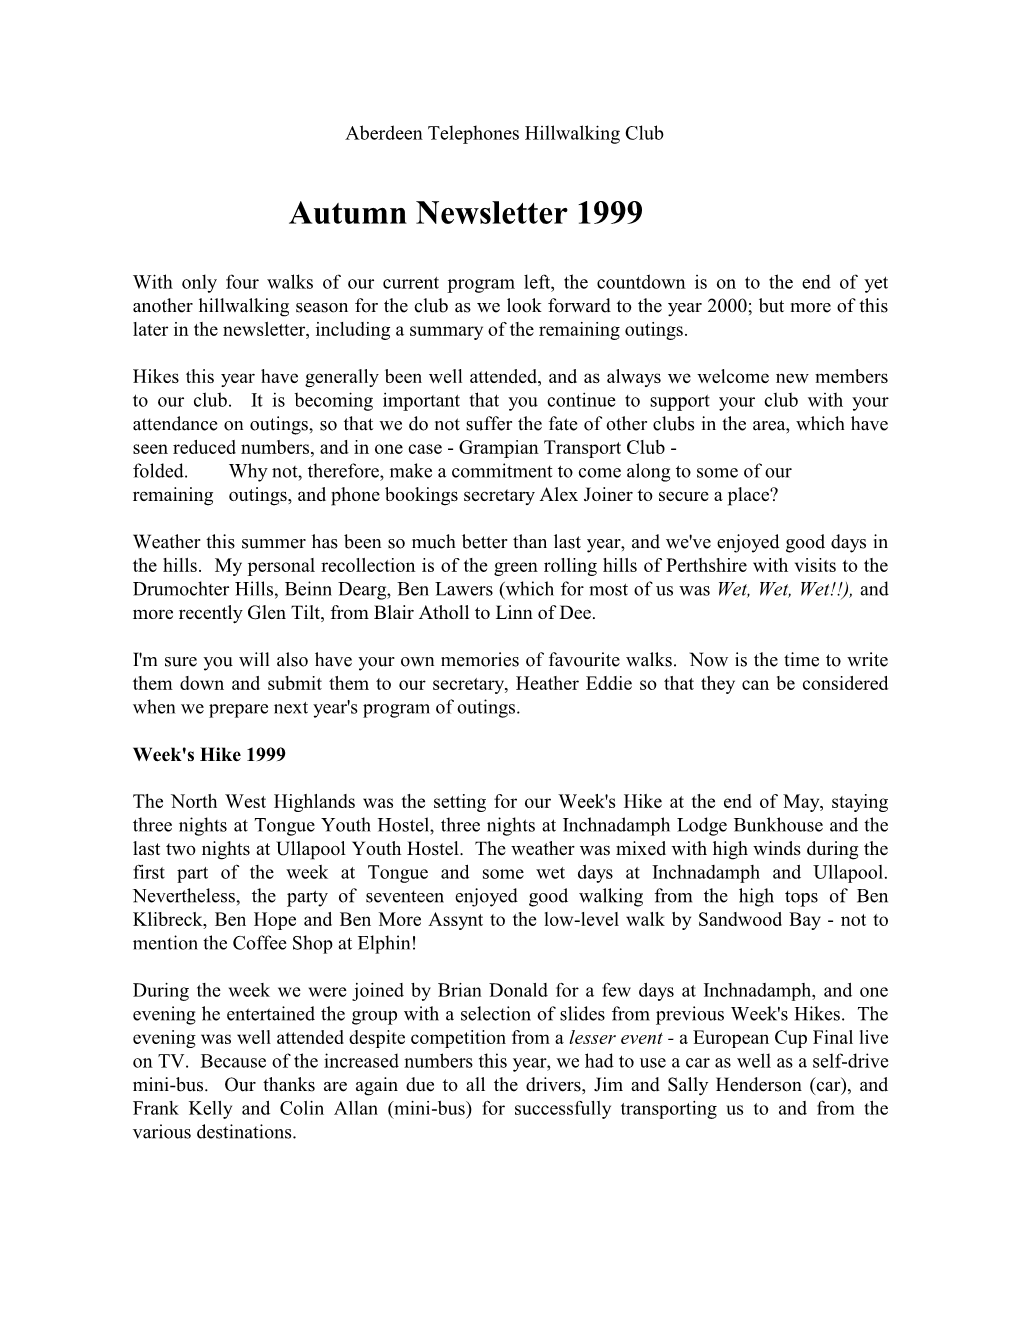 Newsletter Autumn 1999